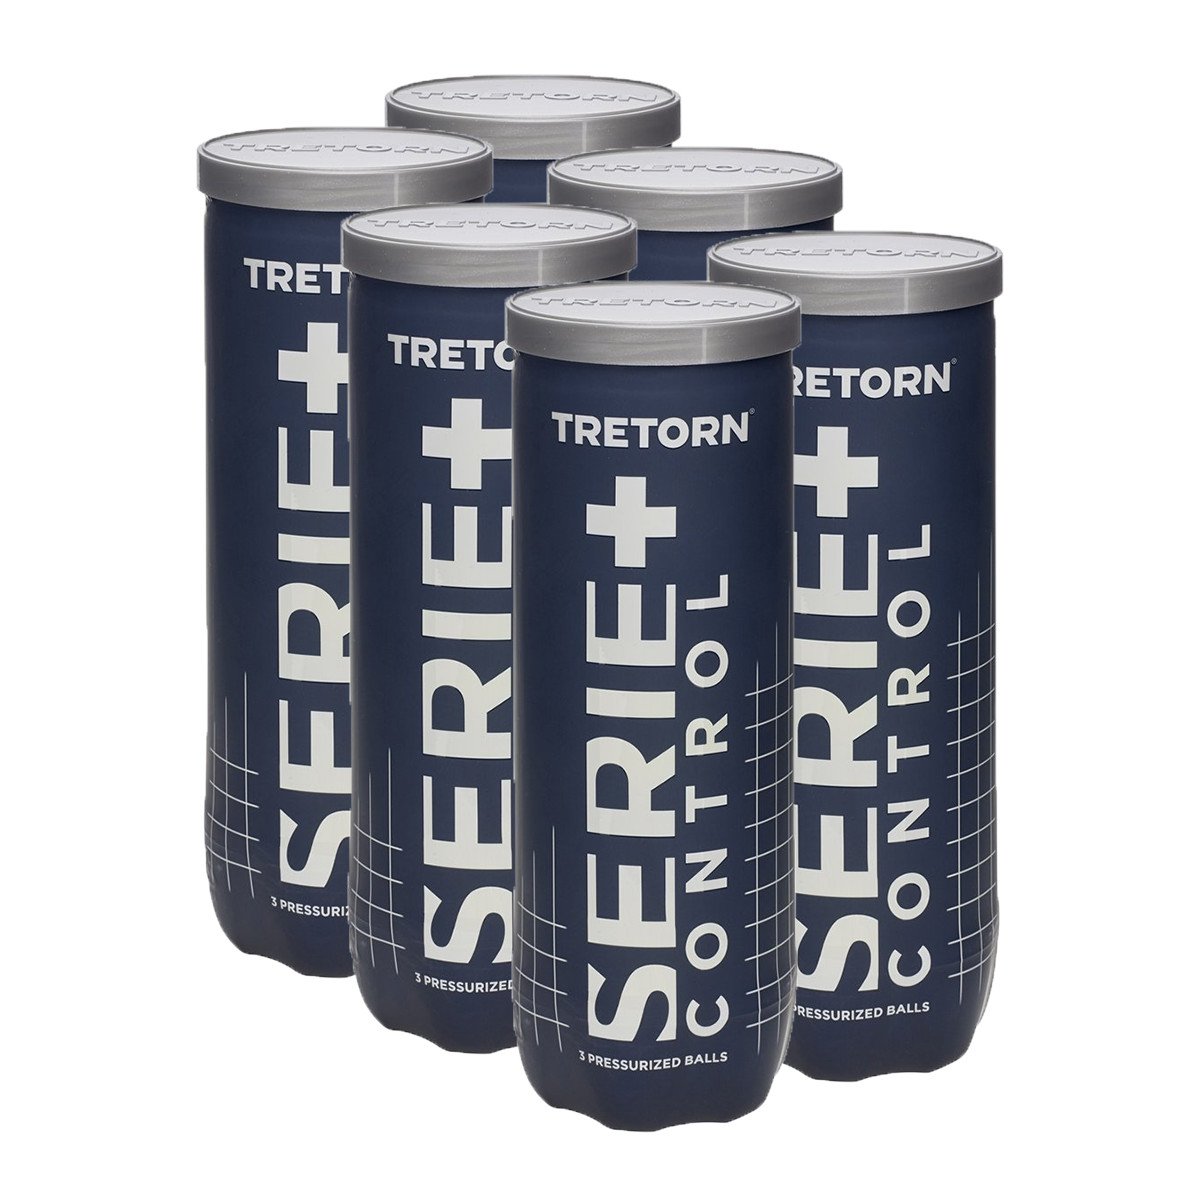 Bola de Tênis Tretorn Control - Pack com 6 tubos